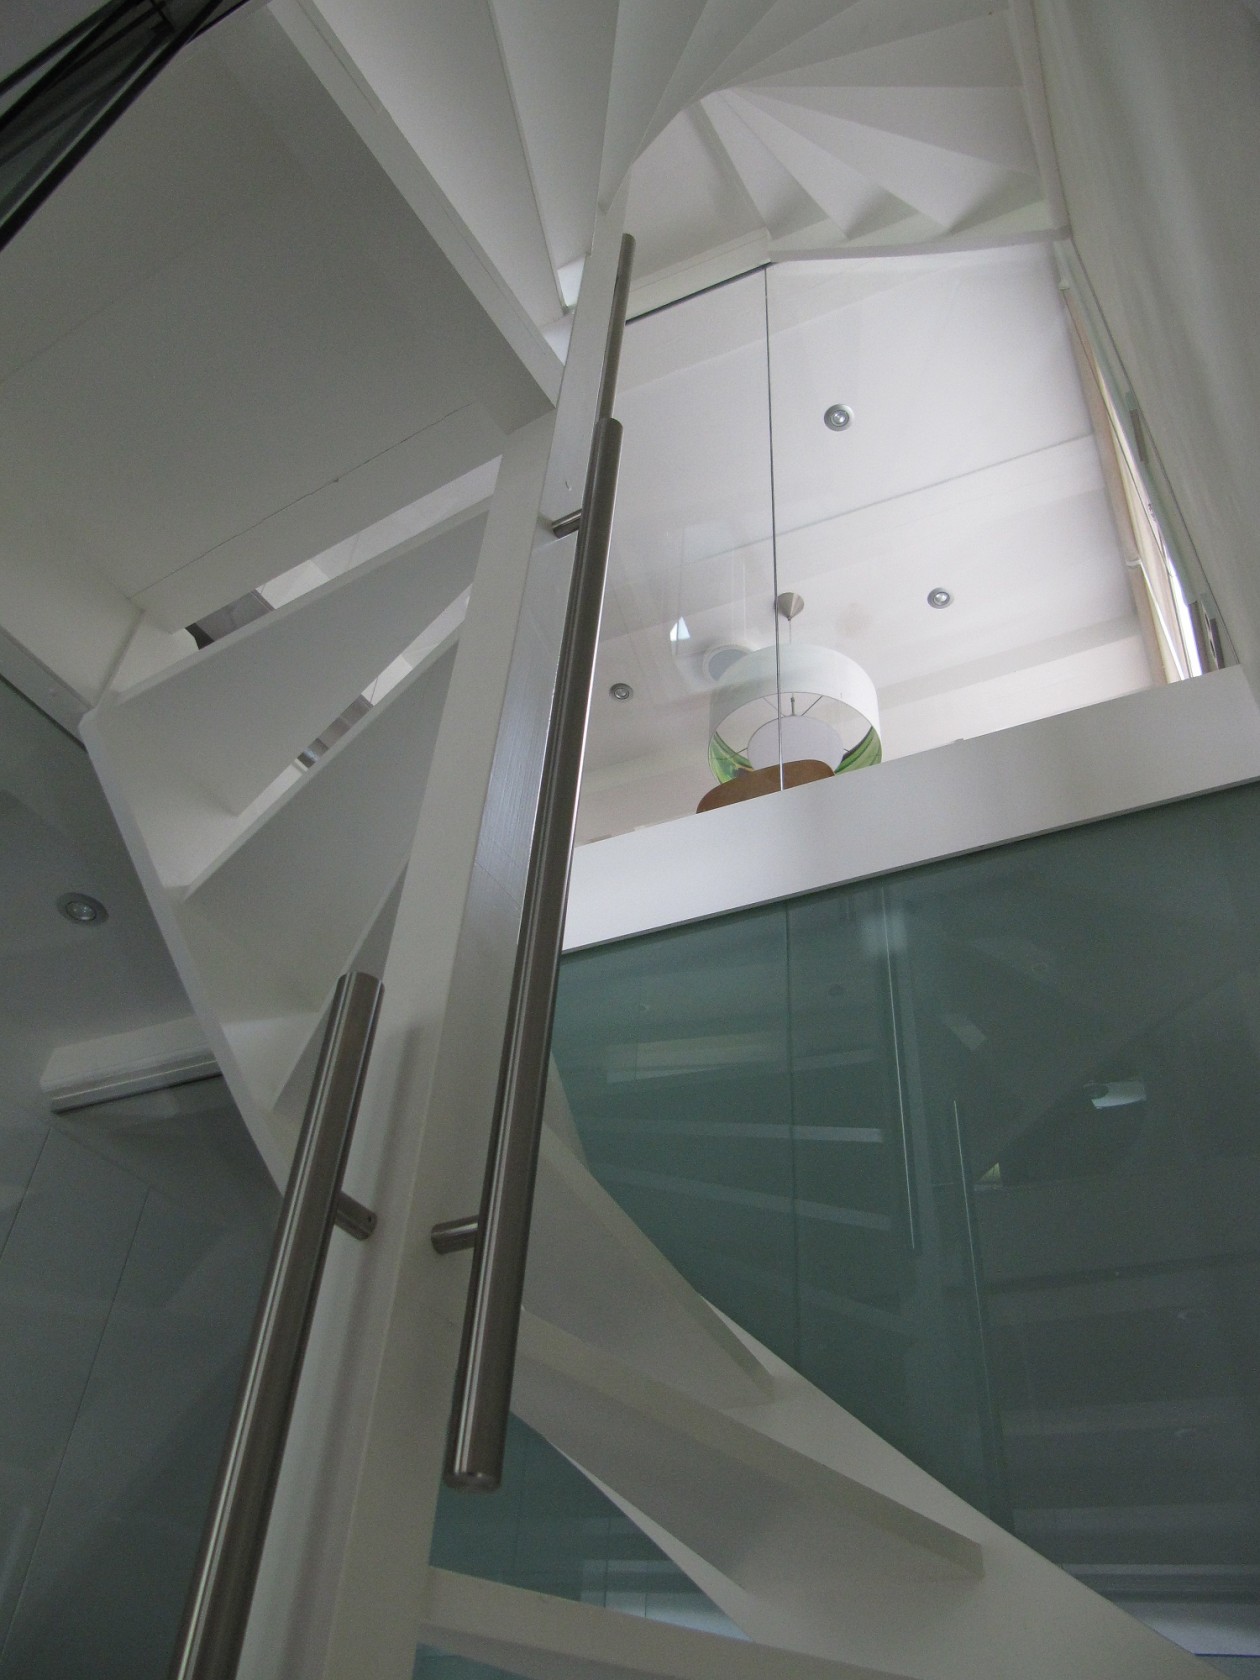 Foto: w3 RVS design leuningen verticaal gemonteerd tegen trappaal (3)